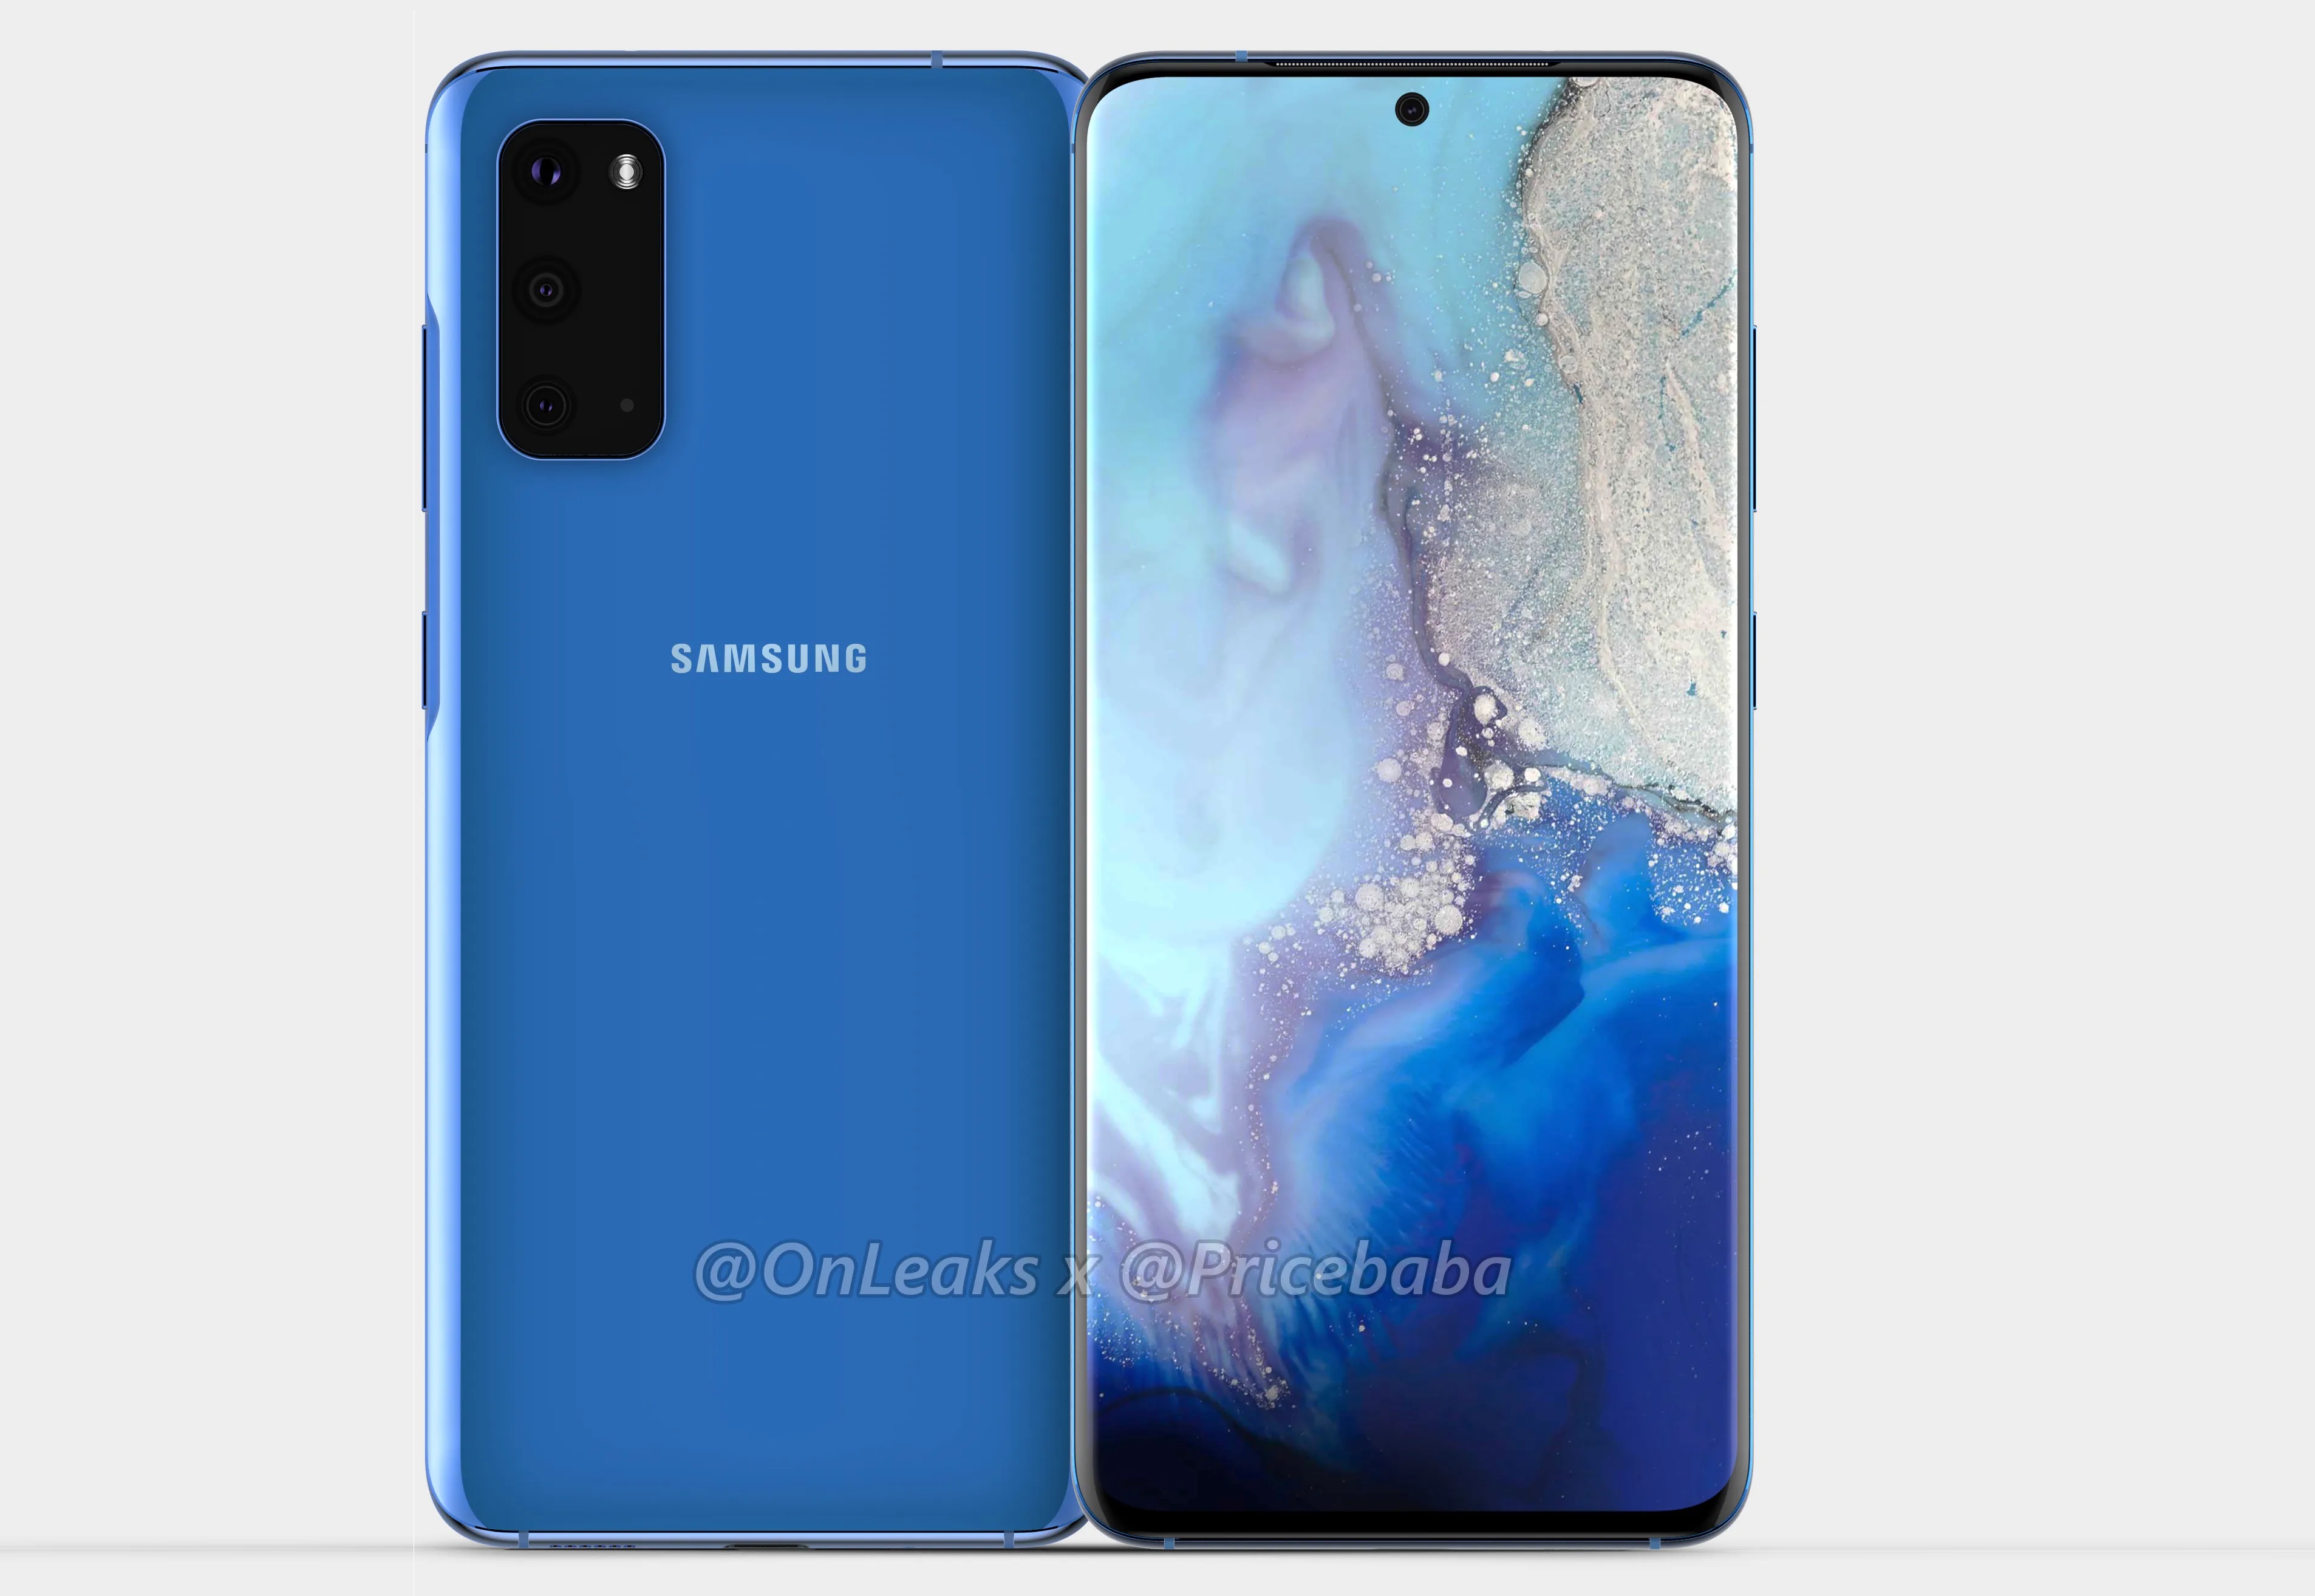 מפרט מלא של דגמי סדרת Samsung Galaxy S20 נחשף